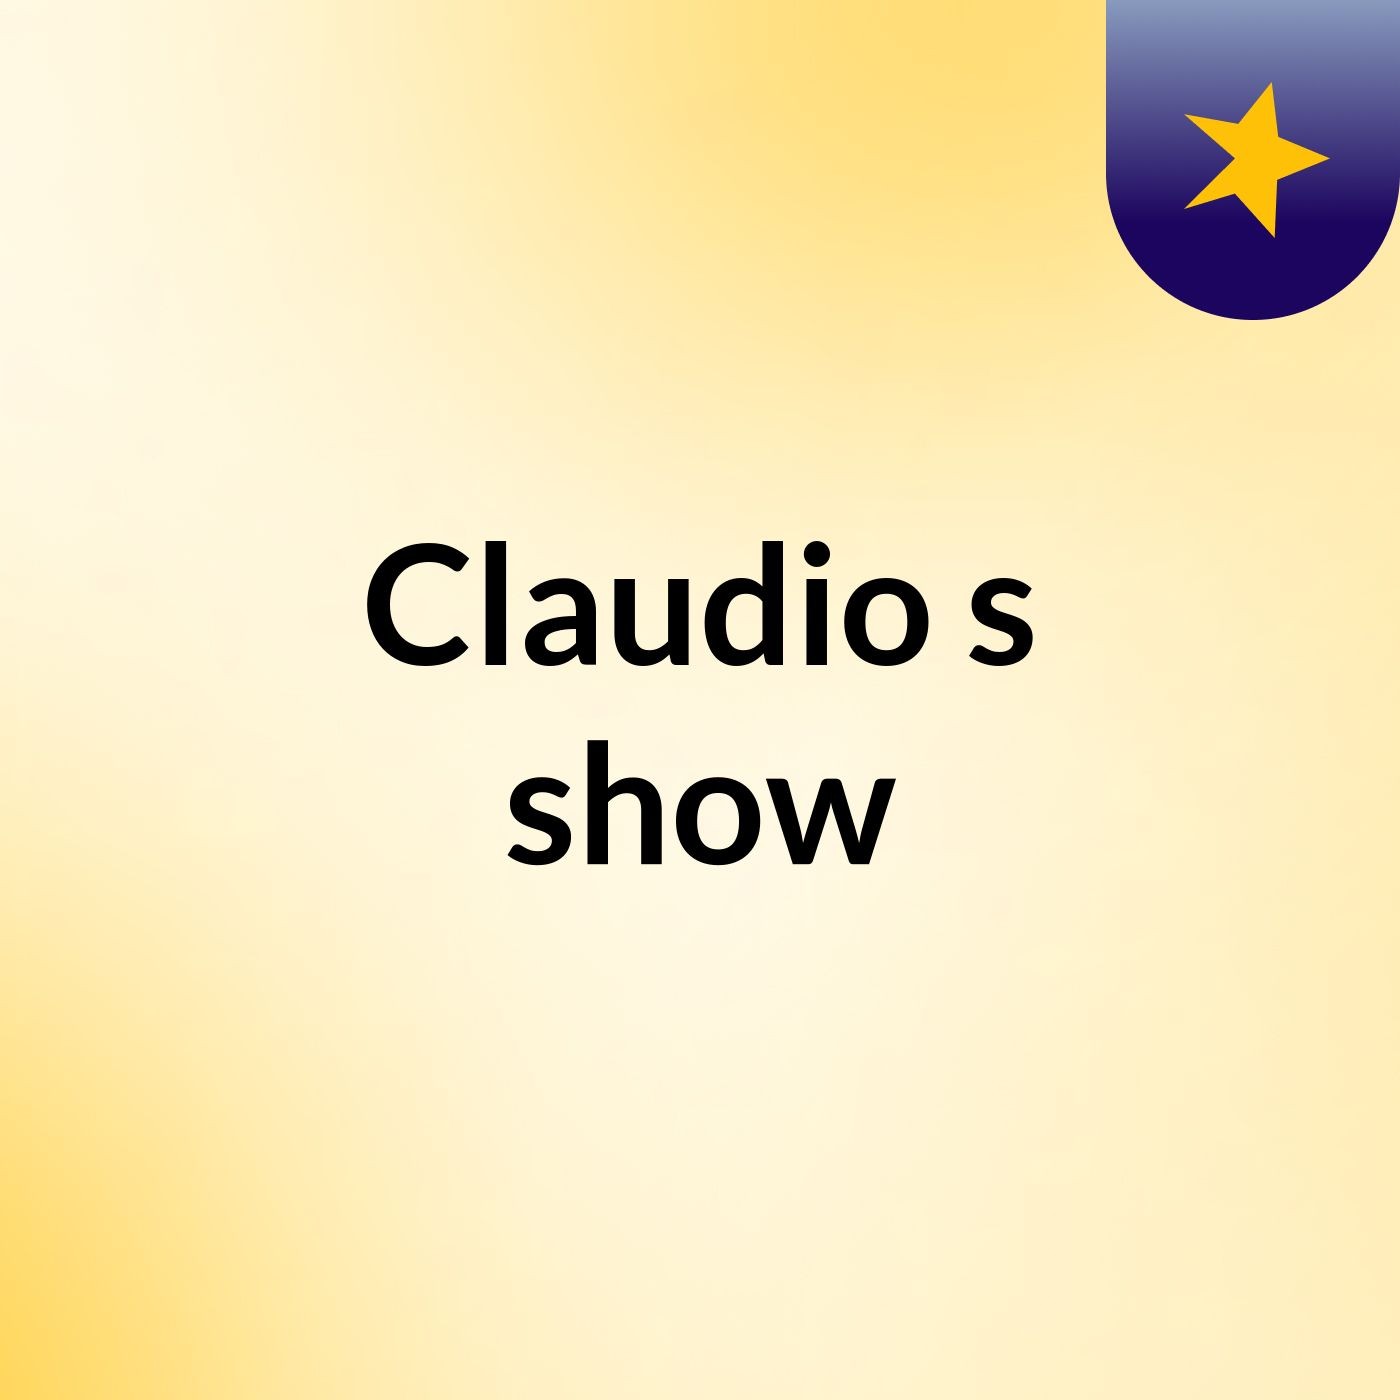 Claudio's show